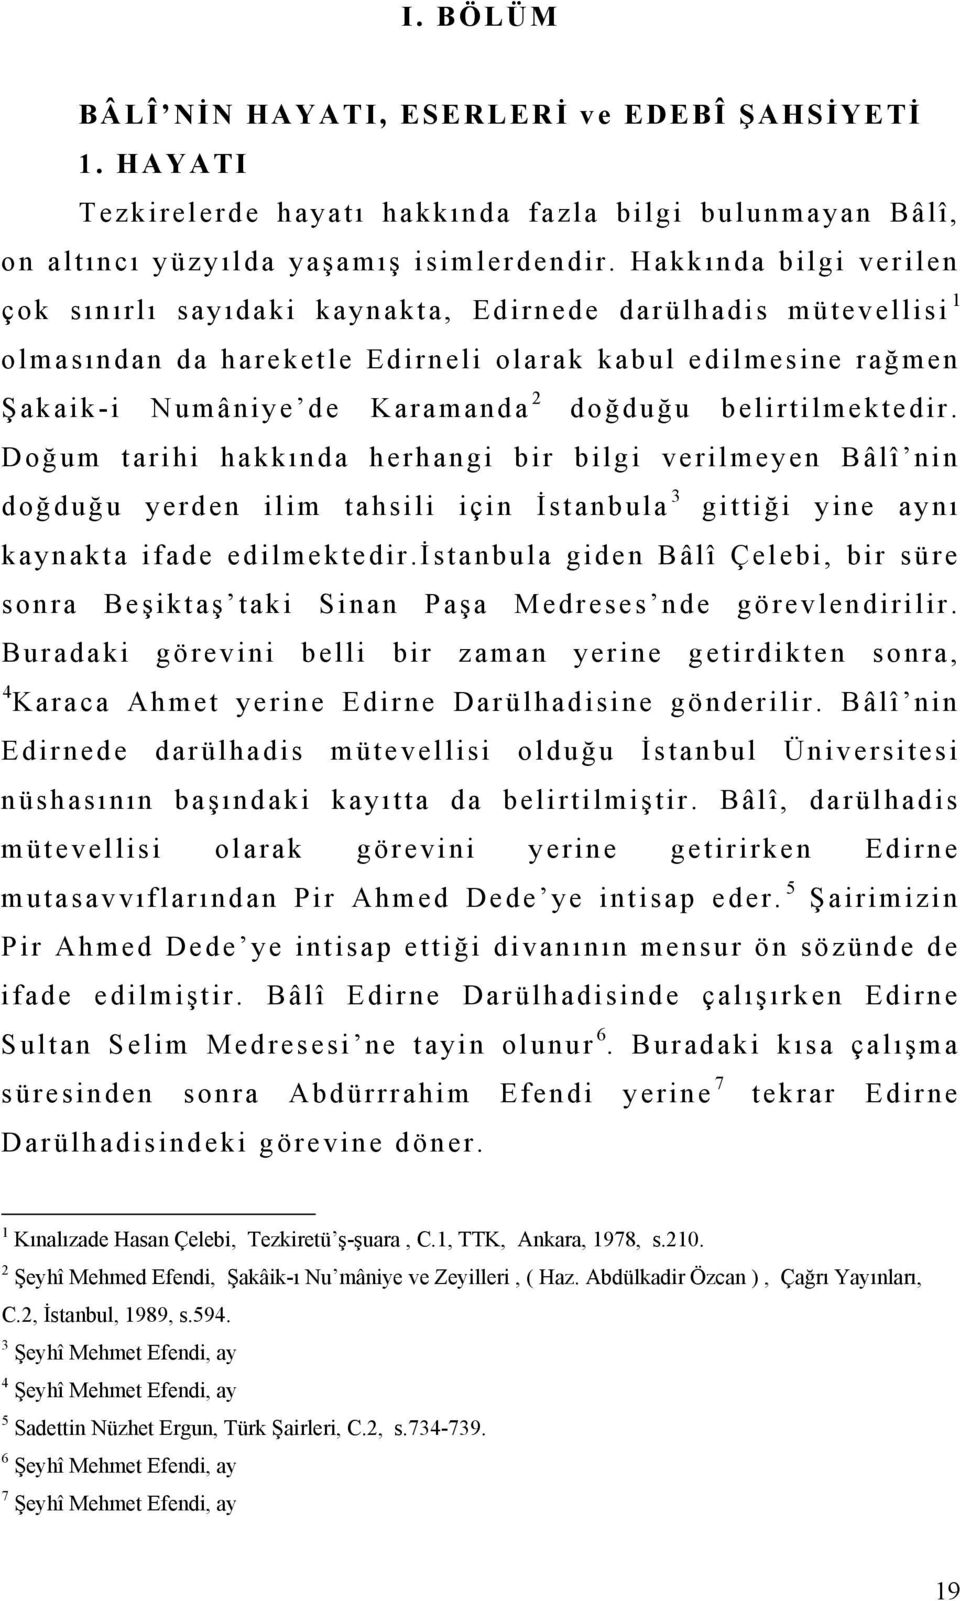 belirtilmektedir. Doğum tarihi hakkında herhangi bir bilgi verilmeyen Bâlî nin doğduğu yerden ilim tahsili için İstanbula 3 gittiği yine aynı kaynakta ifade edilmektedir.